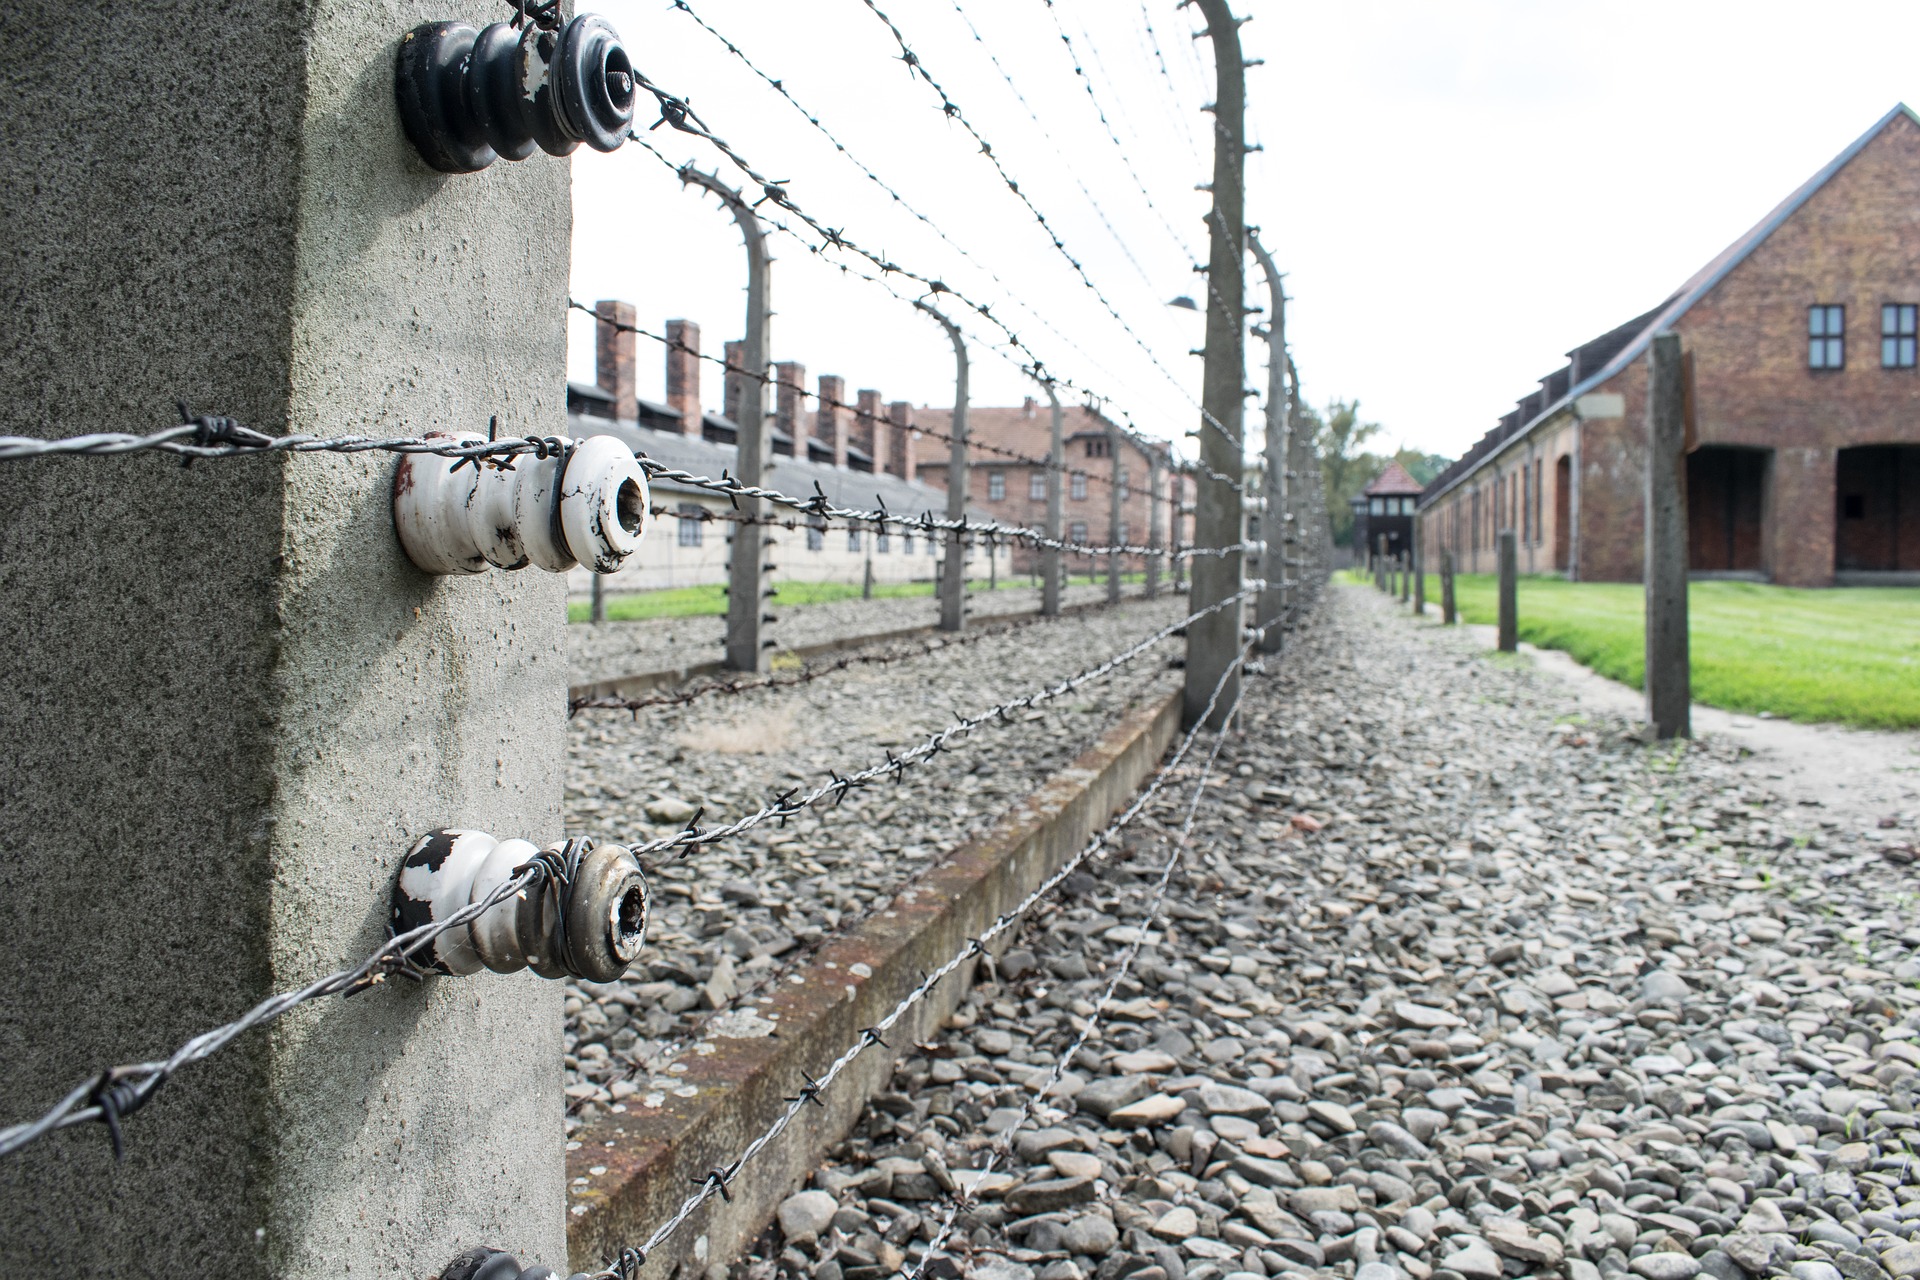 Relativierung des Holocausts rechtfertigt fristlose Kündigung